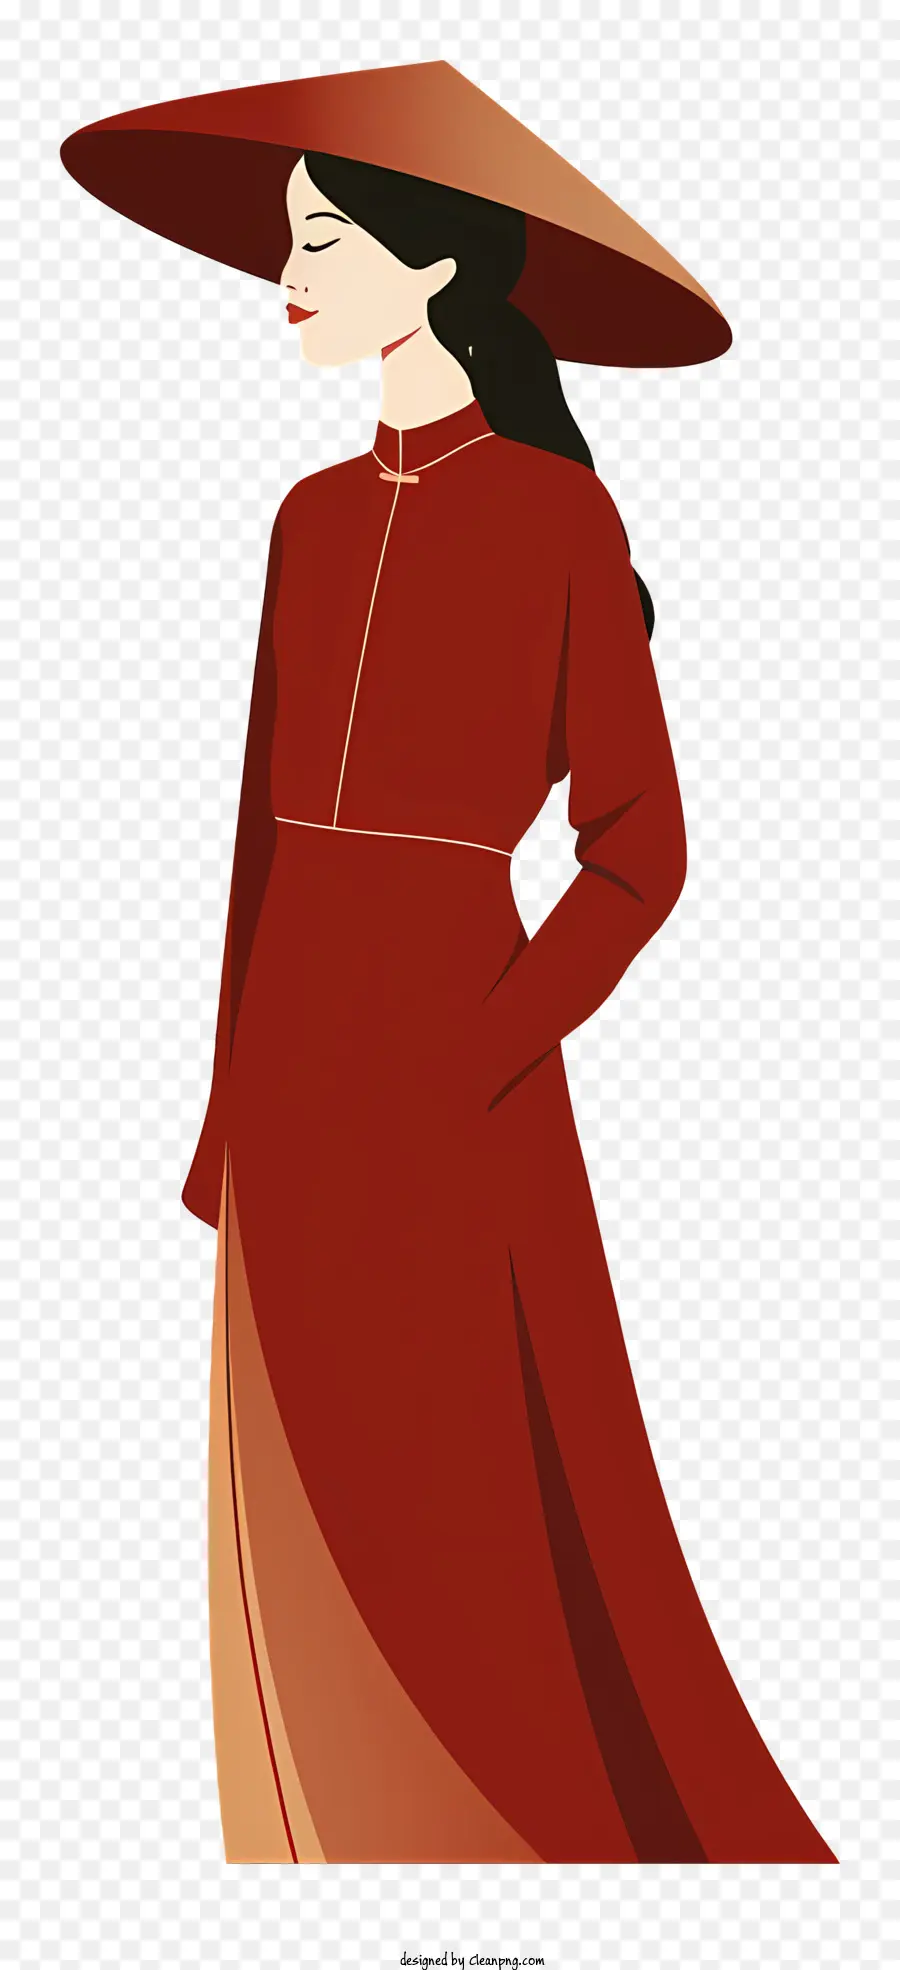 Roter hintergrund - Frau im roten Kleid und Strohhut